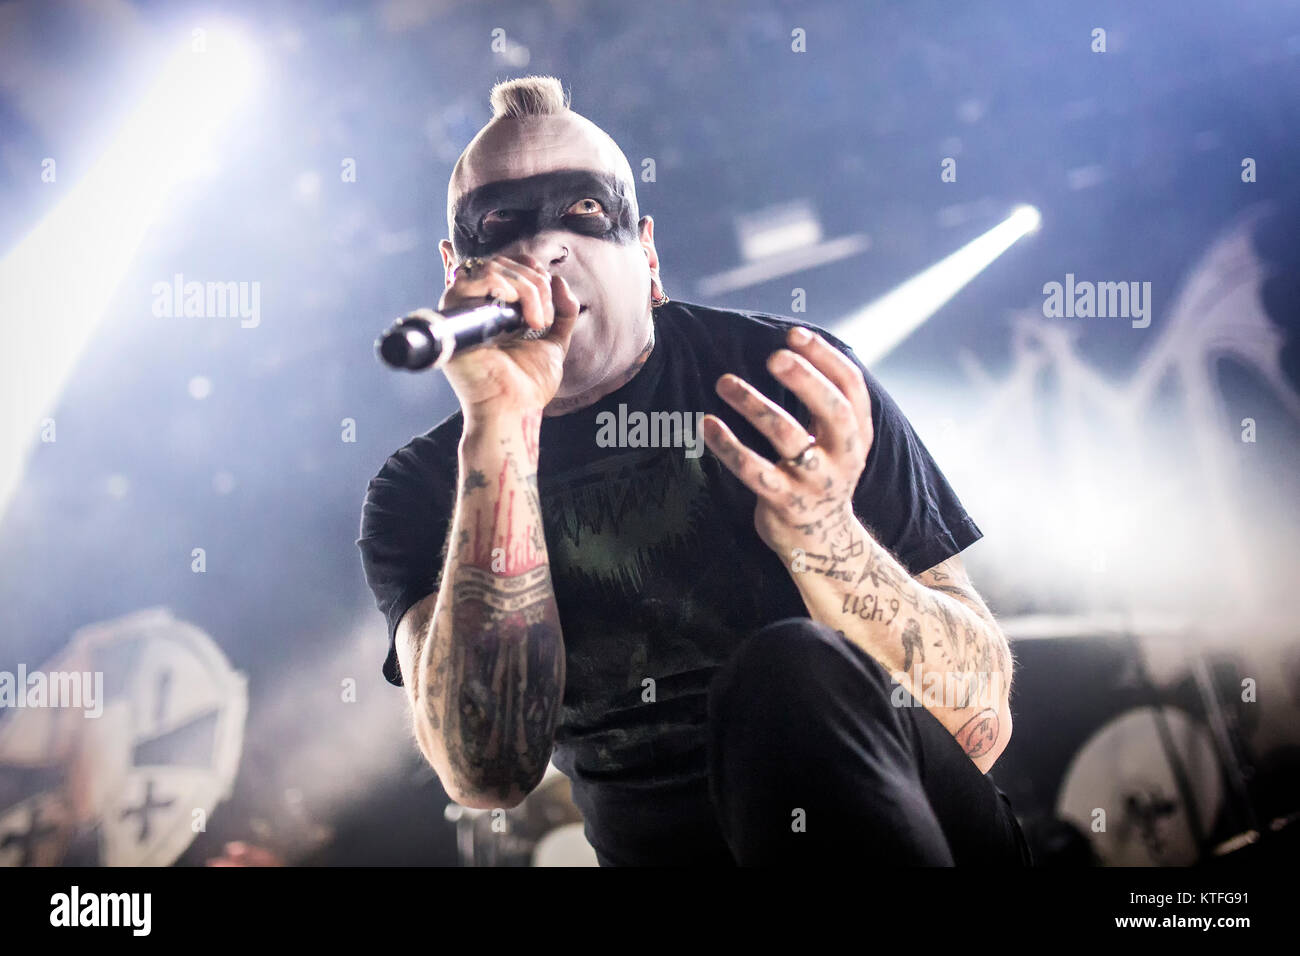 La banda de Black Metal noruego Mayhem realiza un concierto en vivo en el Rockefeller como parte del festival Inferno Metal Festival 2016 en Oslo. El concierto fue un show especial incluyen a ex-miembros de las bandas como ere vocalista Maniac en directo sobre un escenario. Noruega, el 27/03 de 2016. Foto de stock